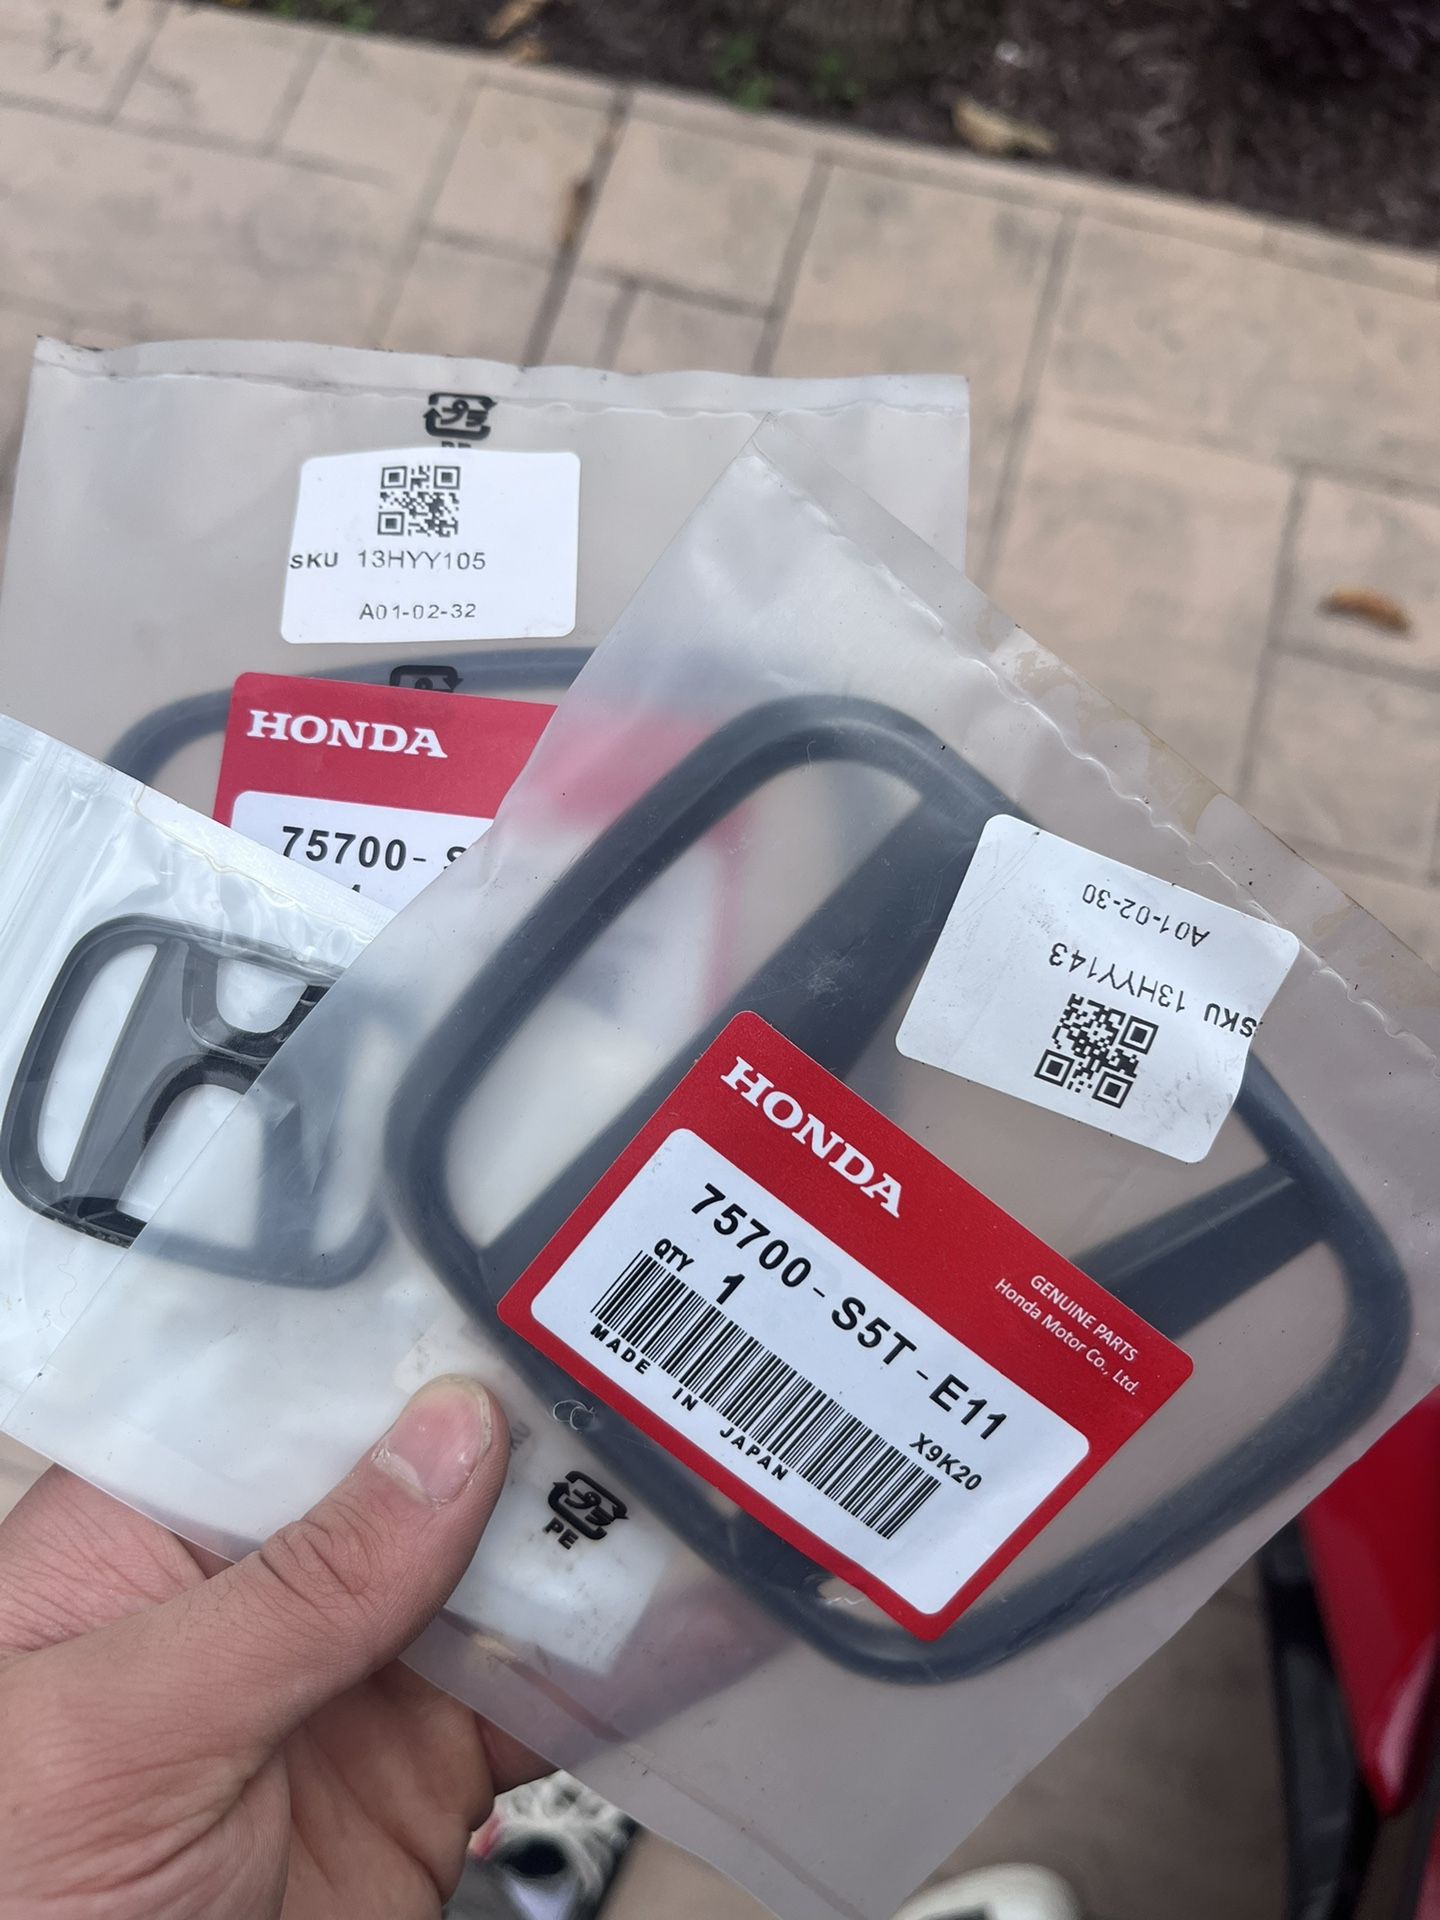 Genuine Honda Black Badges (3pcs)